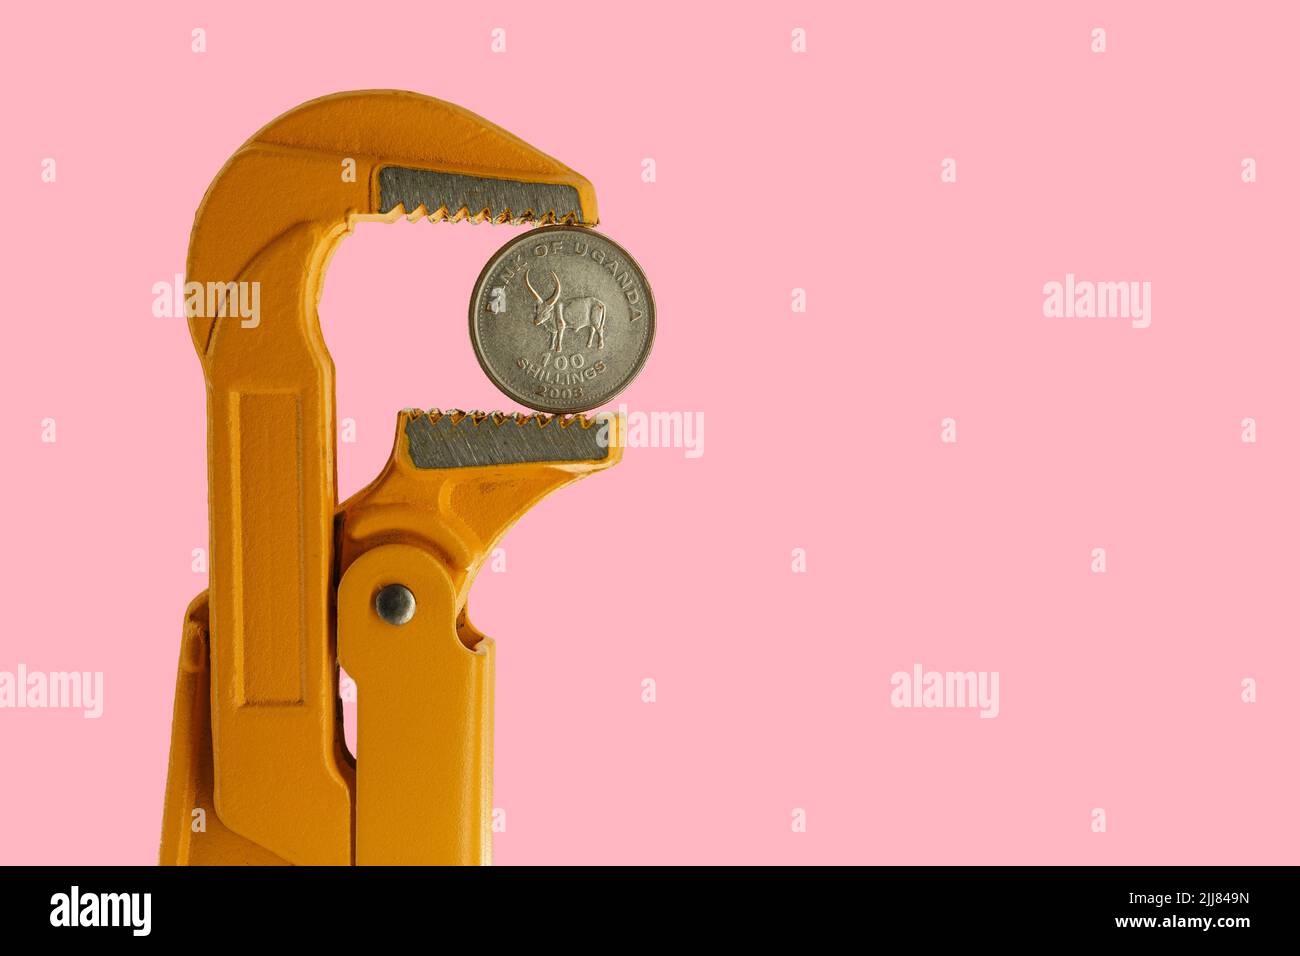 Cento scellini di moneta ugandese tenuti in una chiave per idraulico arancione su sfondo rosa Foto Stock